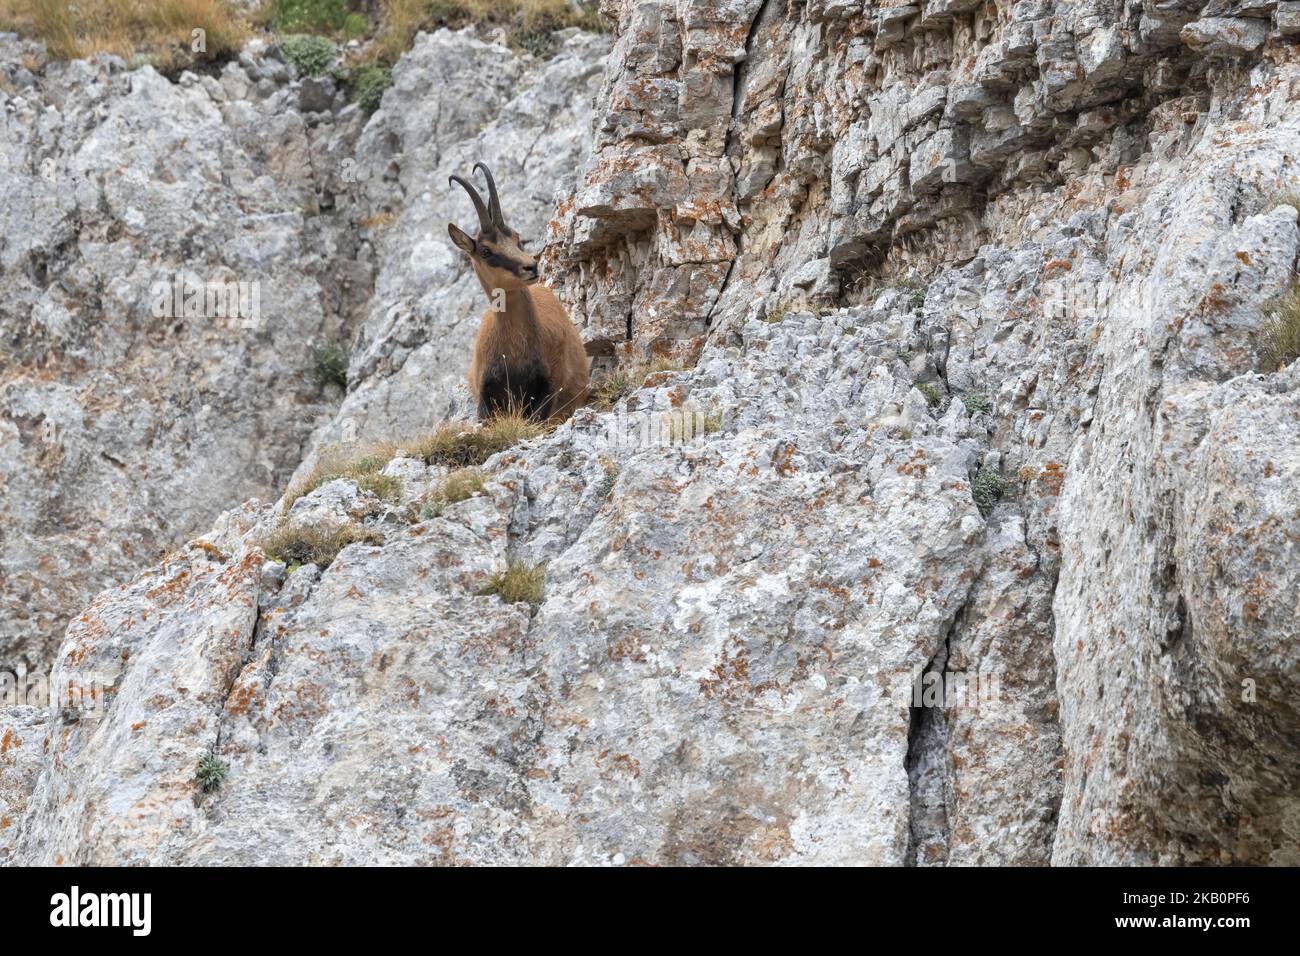 Camoscio appenninico nel Parco Nazionale del Gran Sasso, Abruzzo, Italia. Foto Stock